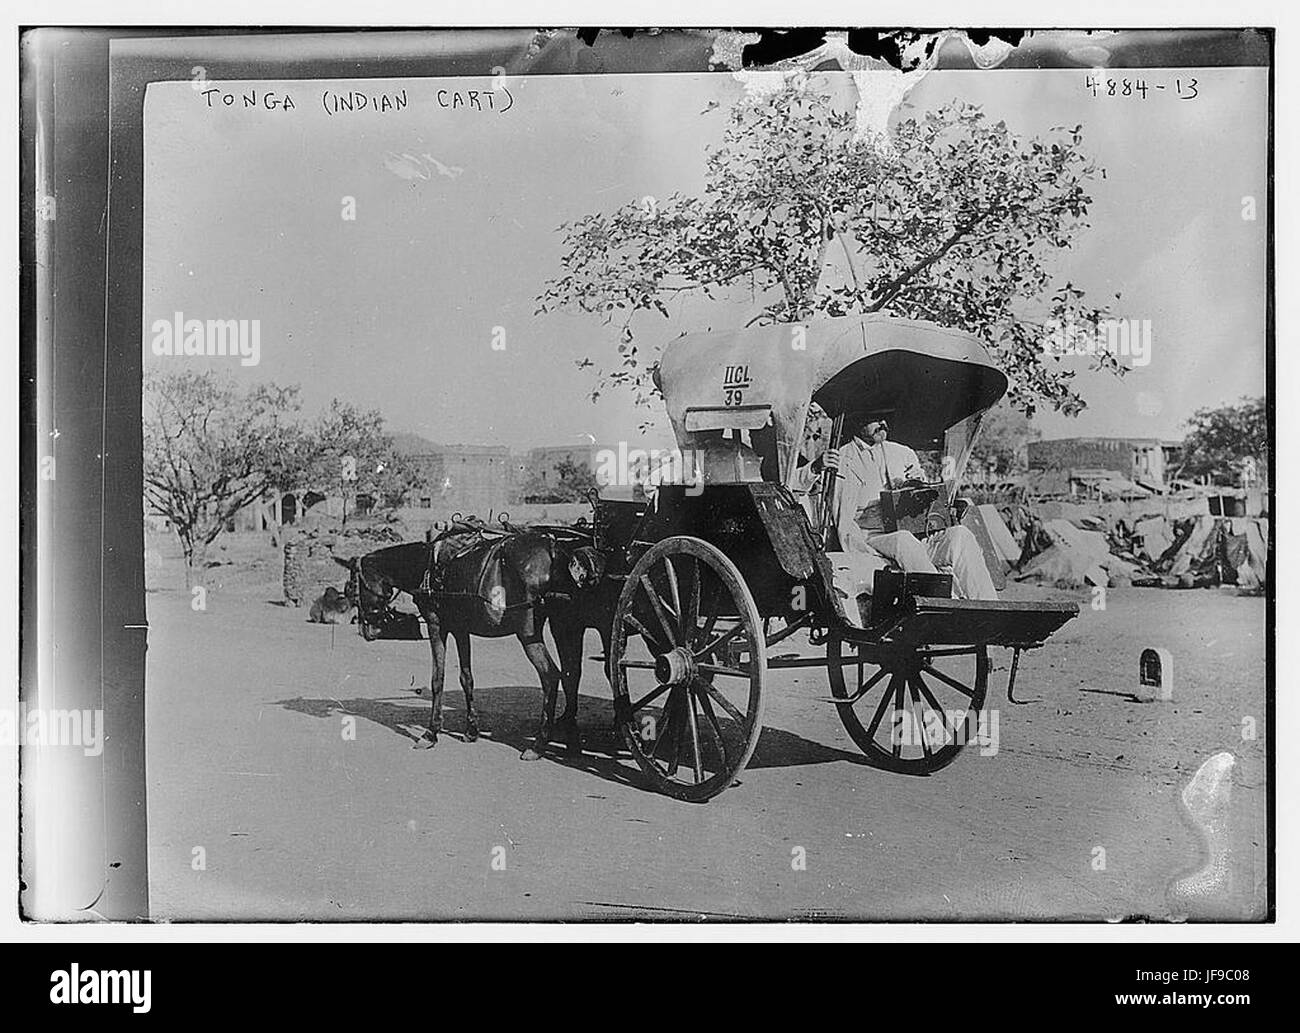 Tonga (Indian Cart)   31448643974 o Stock Photo